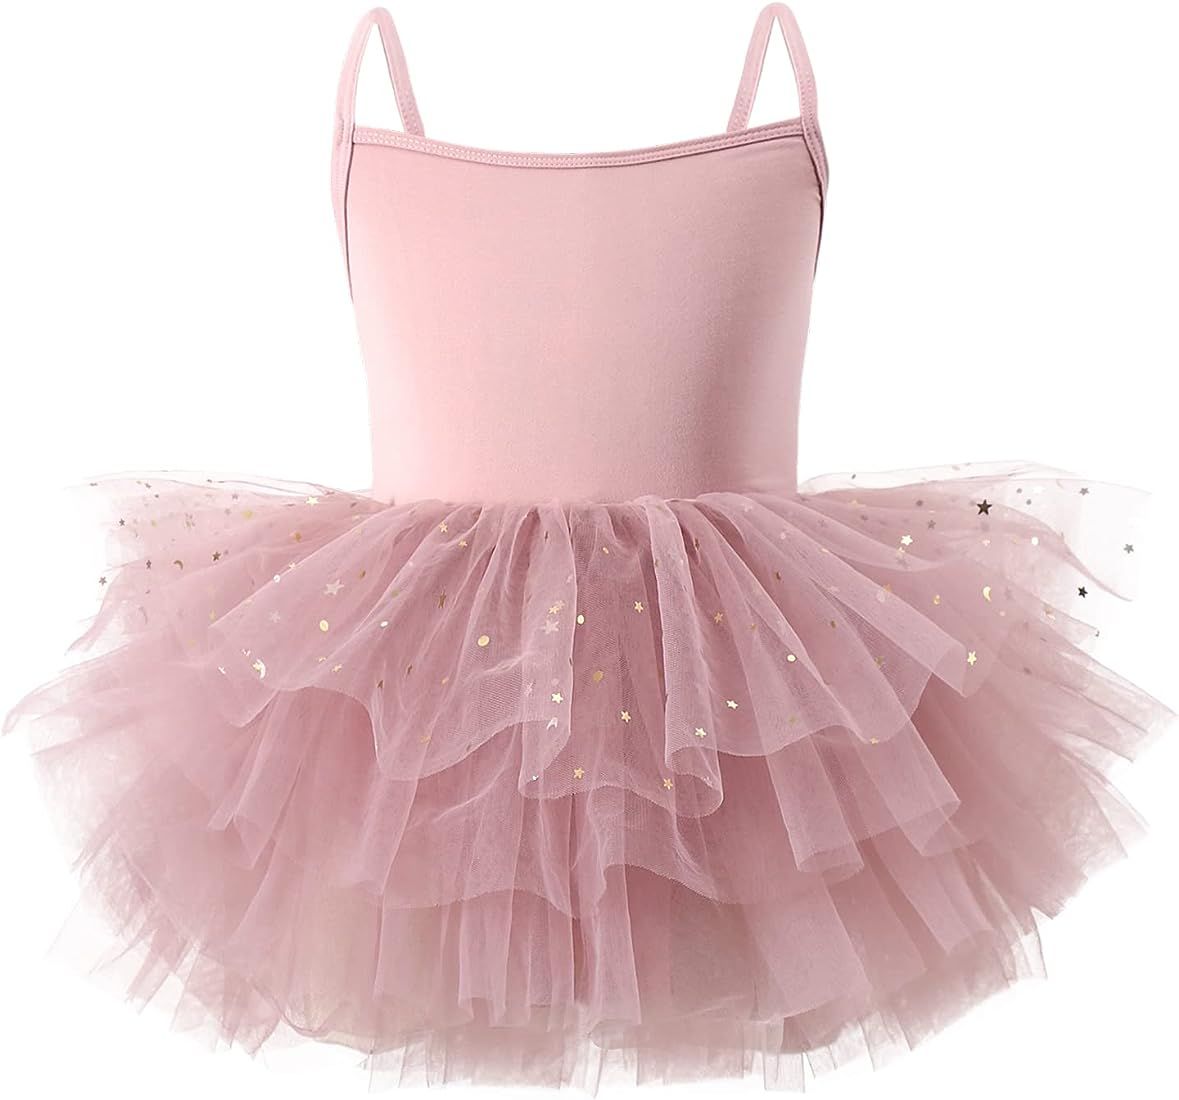 Toddler Girls Tutu Dresses Strap Shiny Tulle Ballet Leotard Ballerina Costume for Dance | Amazon (US)